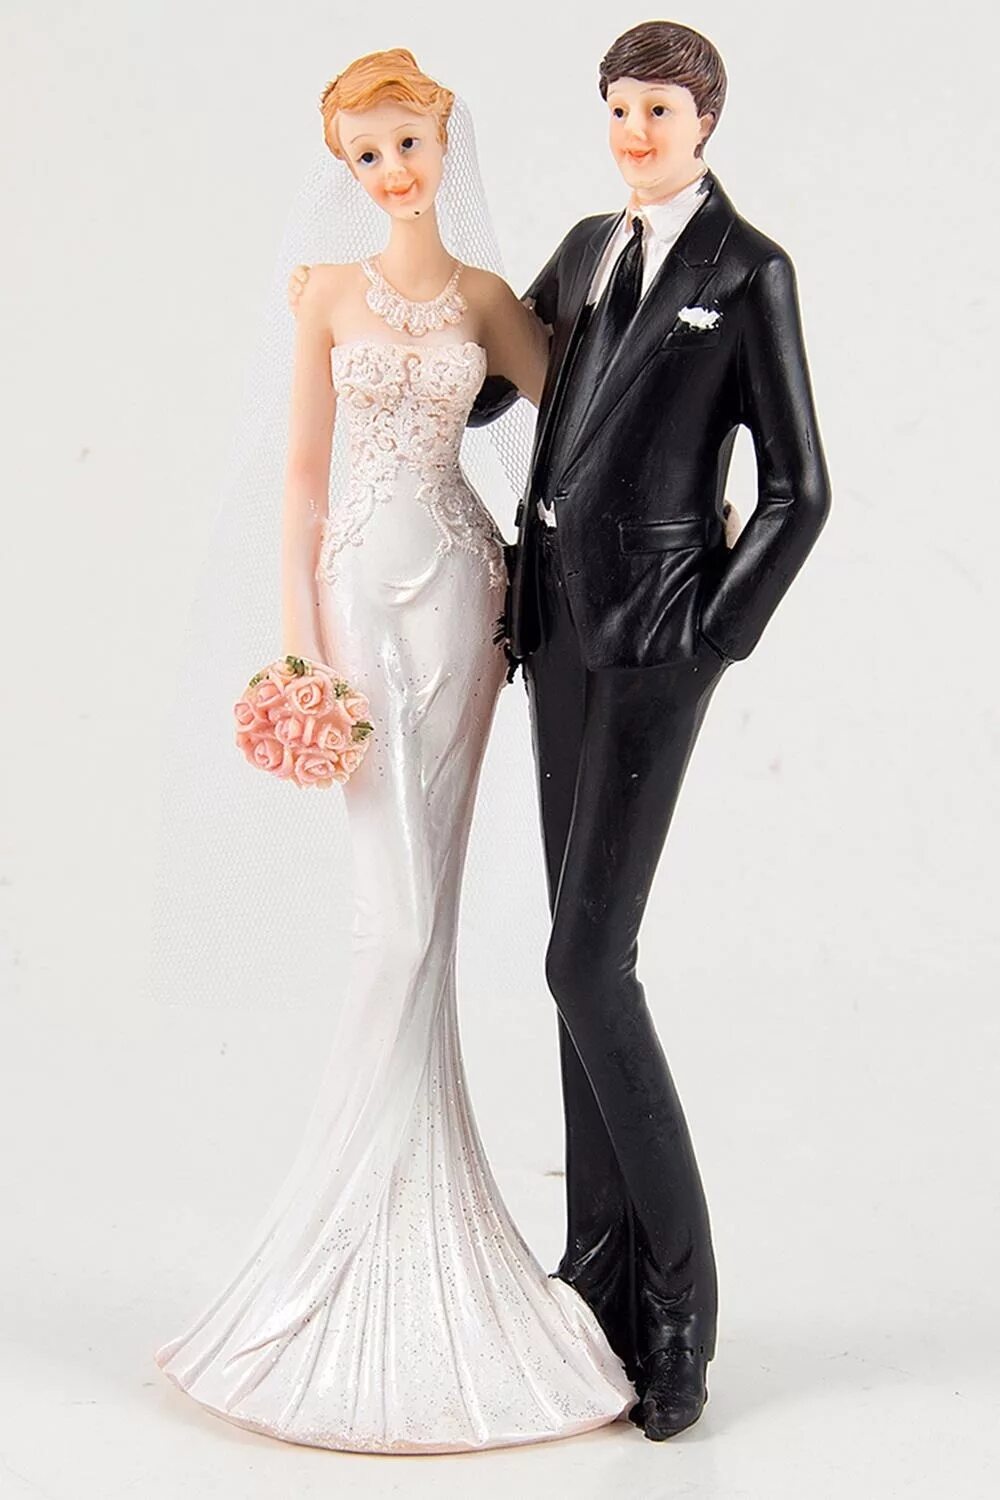 Статуэтка жених и невеста. Свадебные фигурки жениха и невесты. Фигурки жениха и невесты на торт. Свадебная статуэтка жених и невеста.